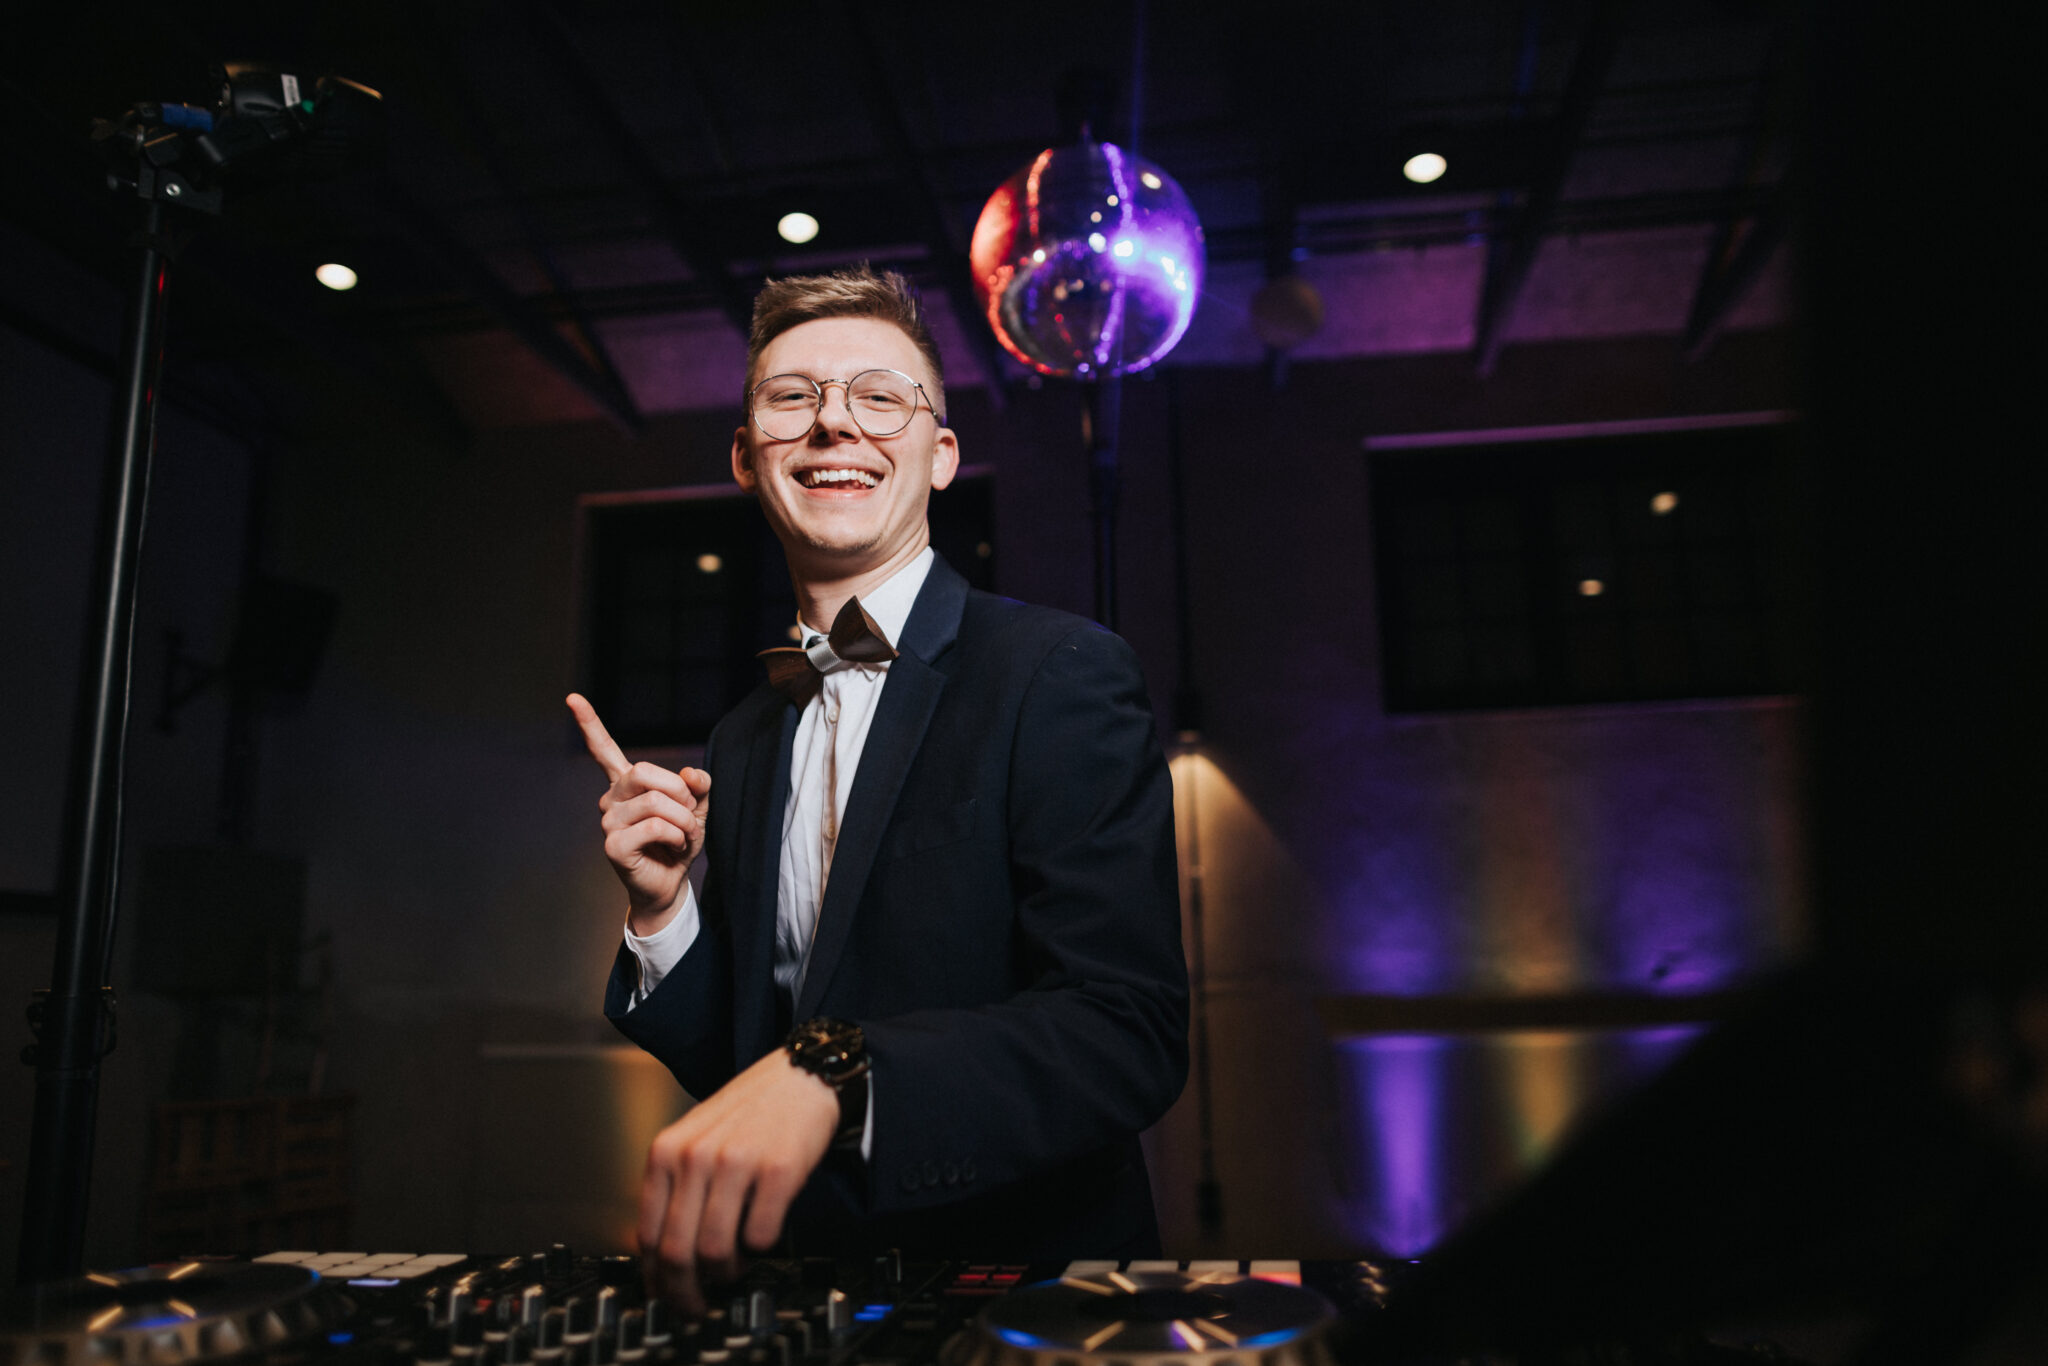 Hochzeits-DJ finden